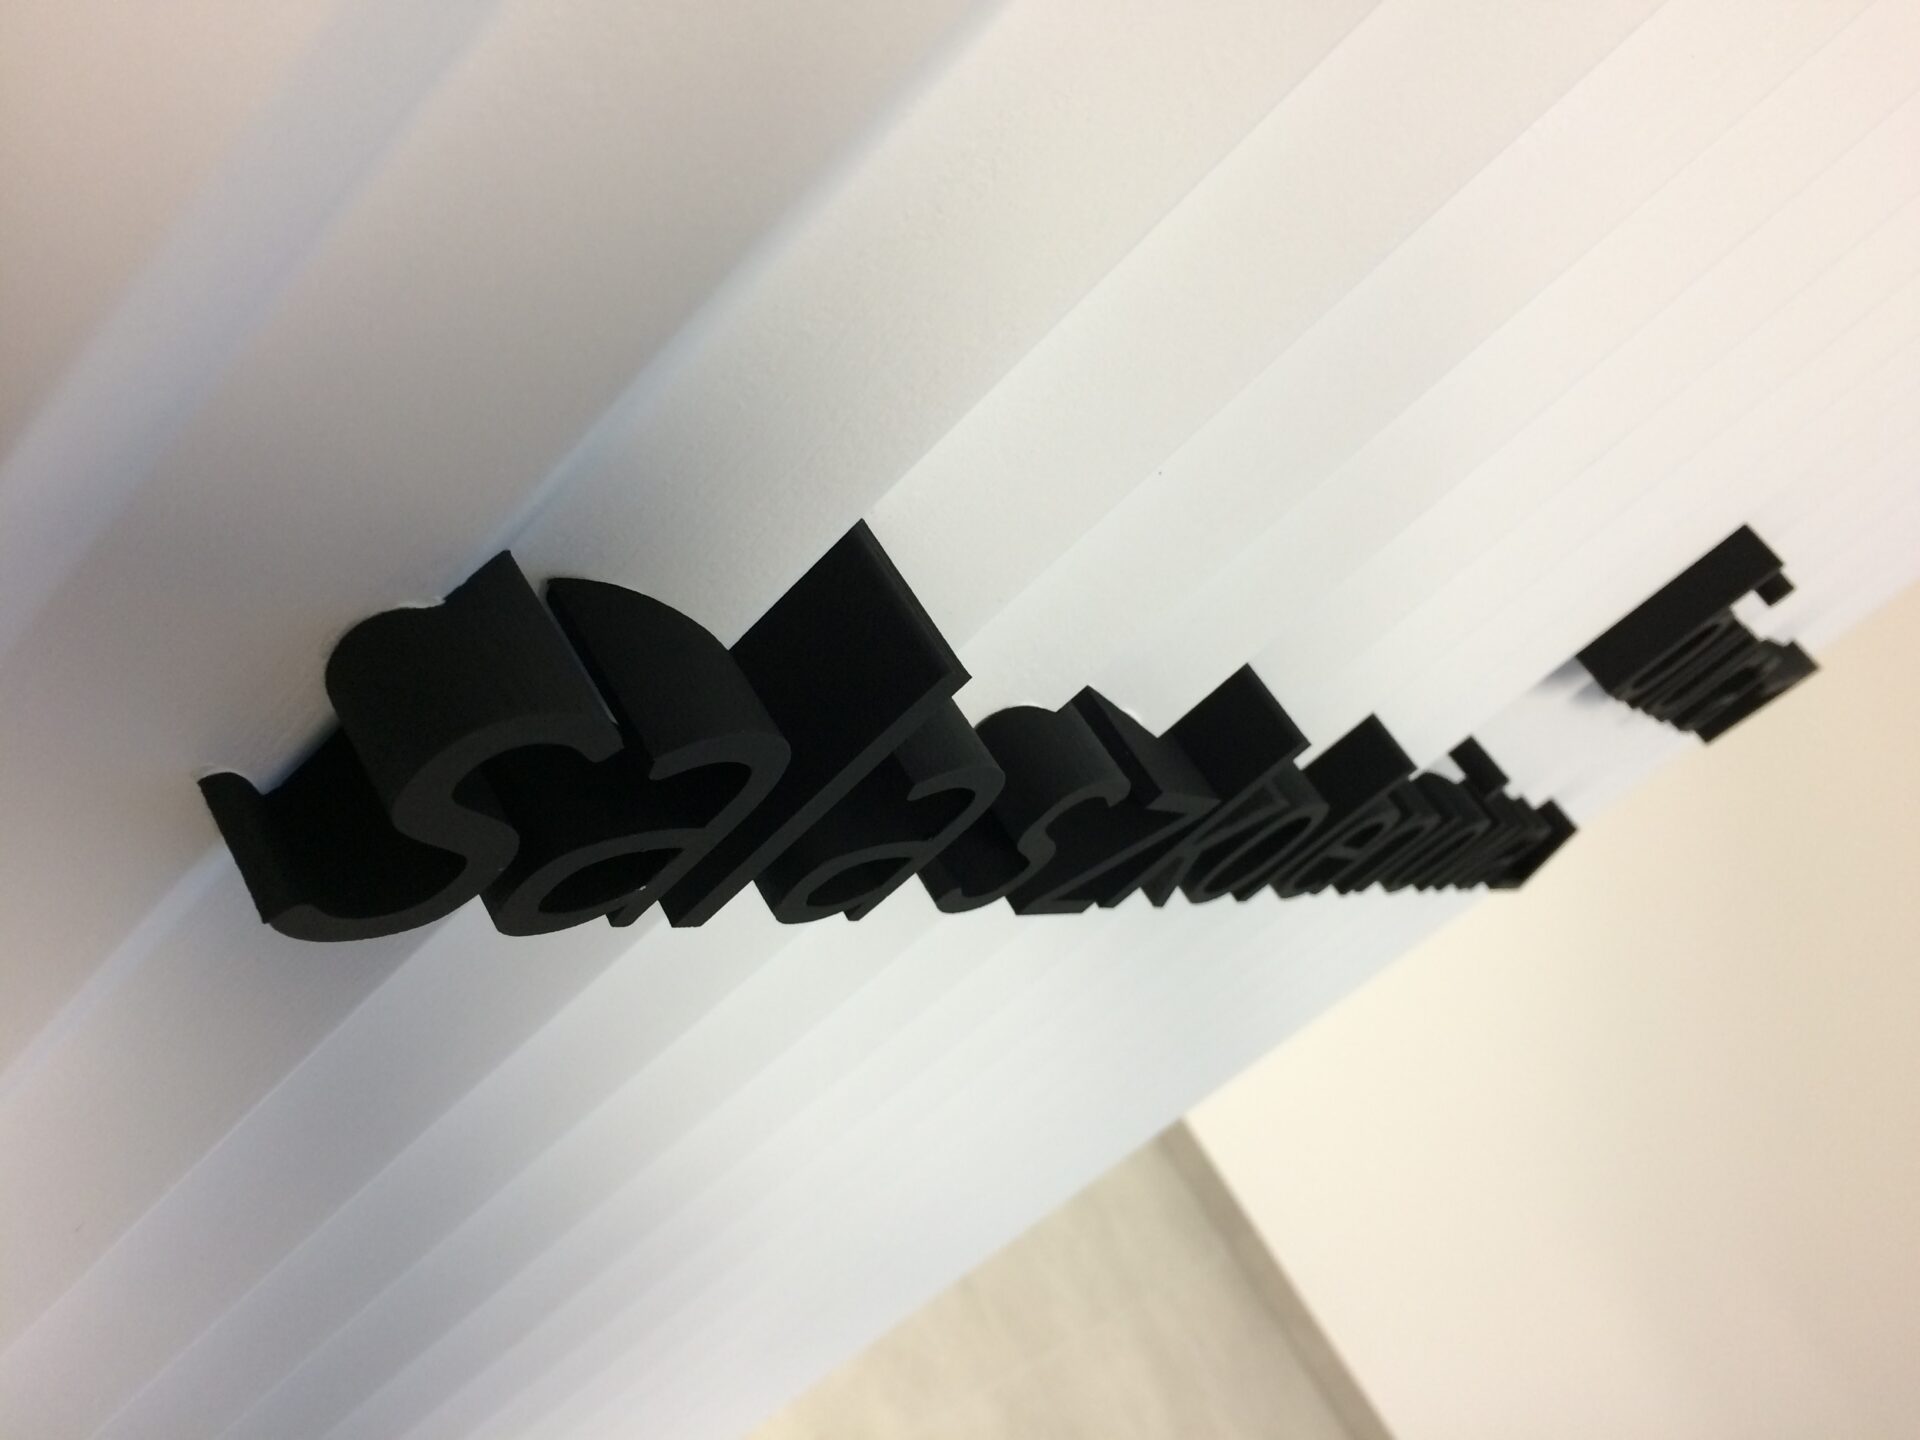 czarne dosyć małe litery blokowe wraz z odpowiednim piktogramem strzałki wskazującej kierunek, na białej ścianie lamelkowej z wystających do przodu trójkątnych pasów. biura sala szkoleniowa